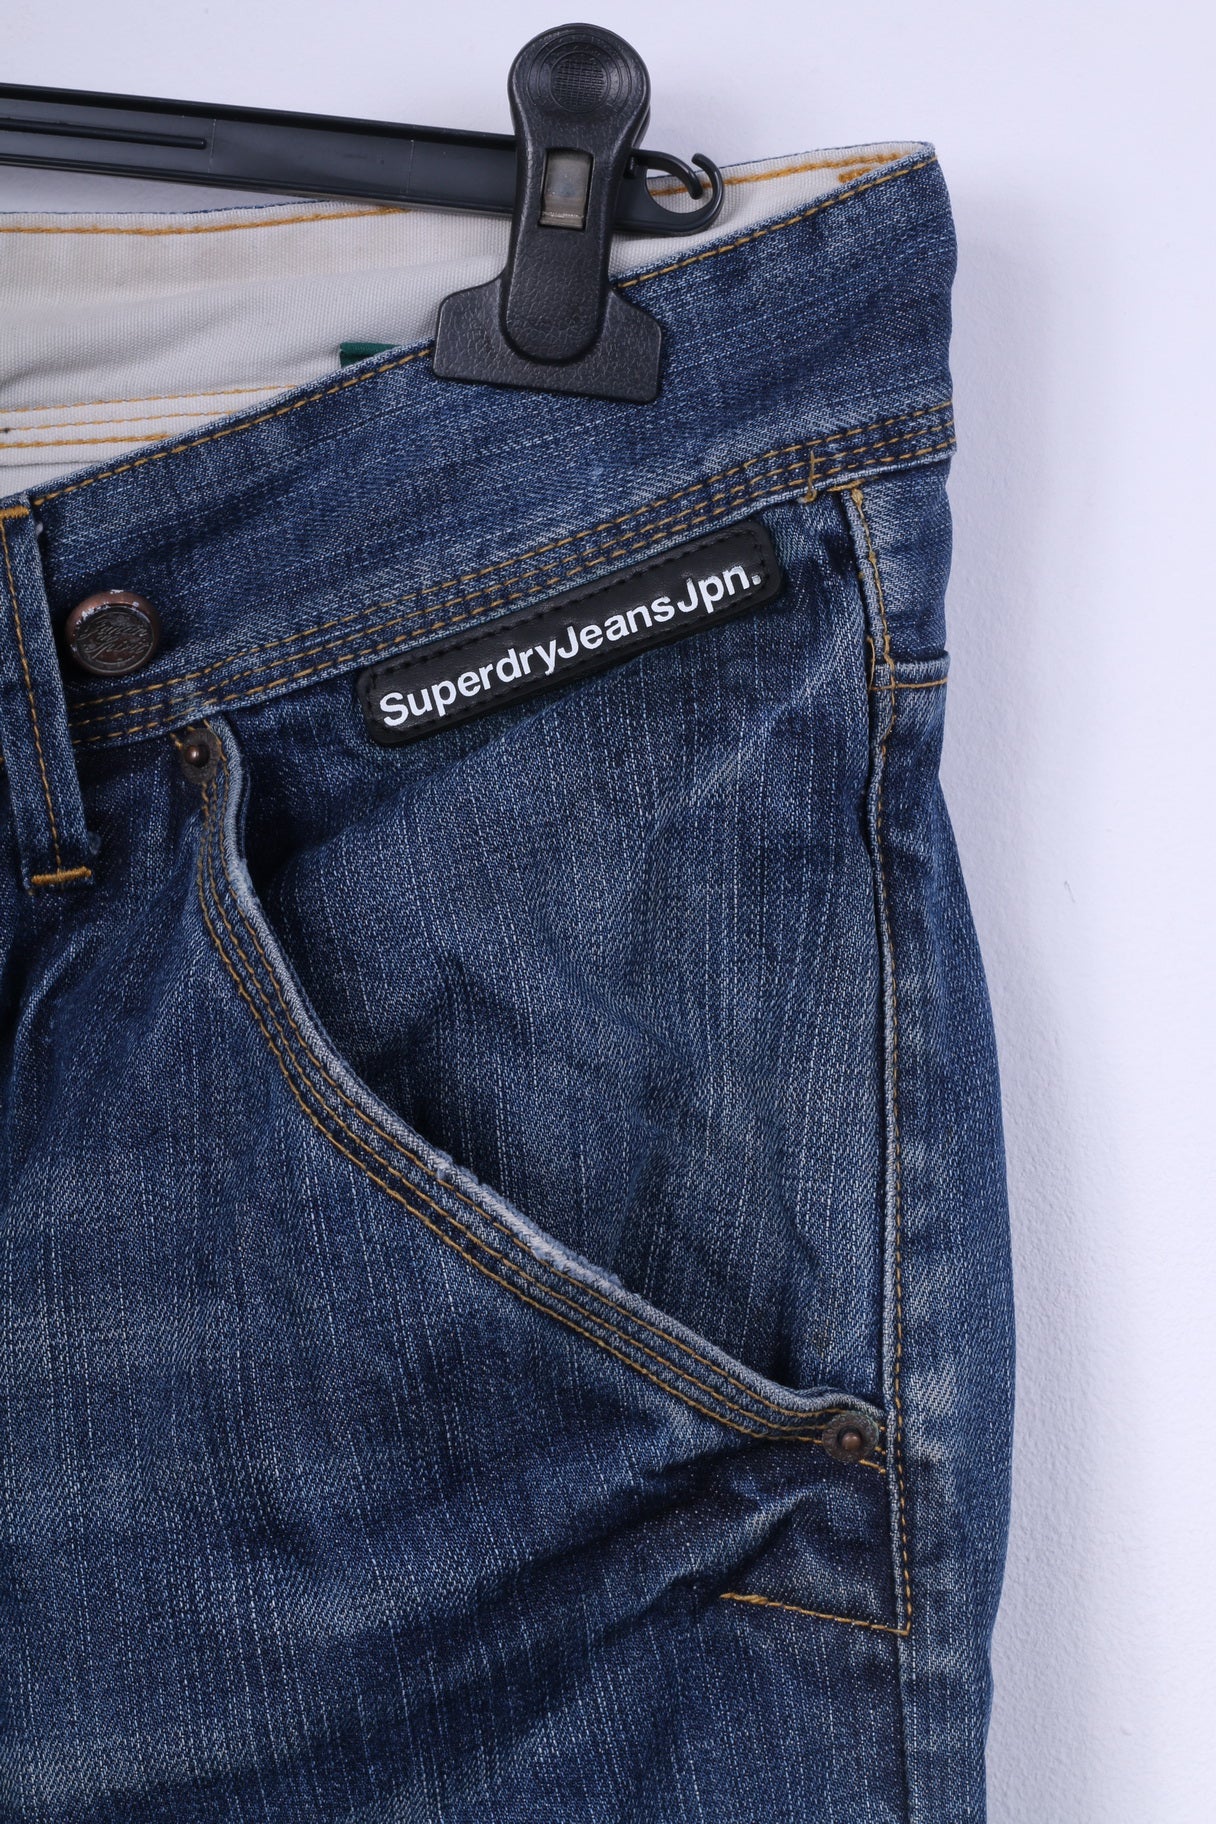 Superdry Mens W36 L32 Trousers Denim Jeans Navy Cotton Japan Pants